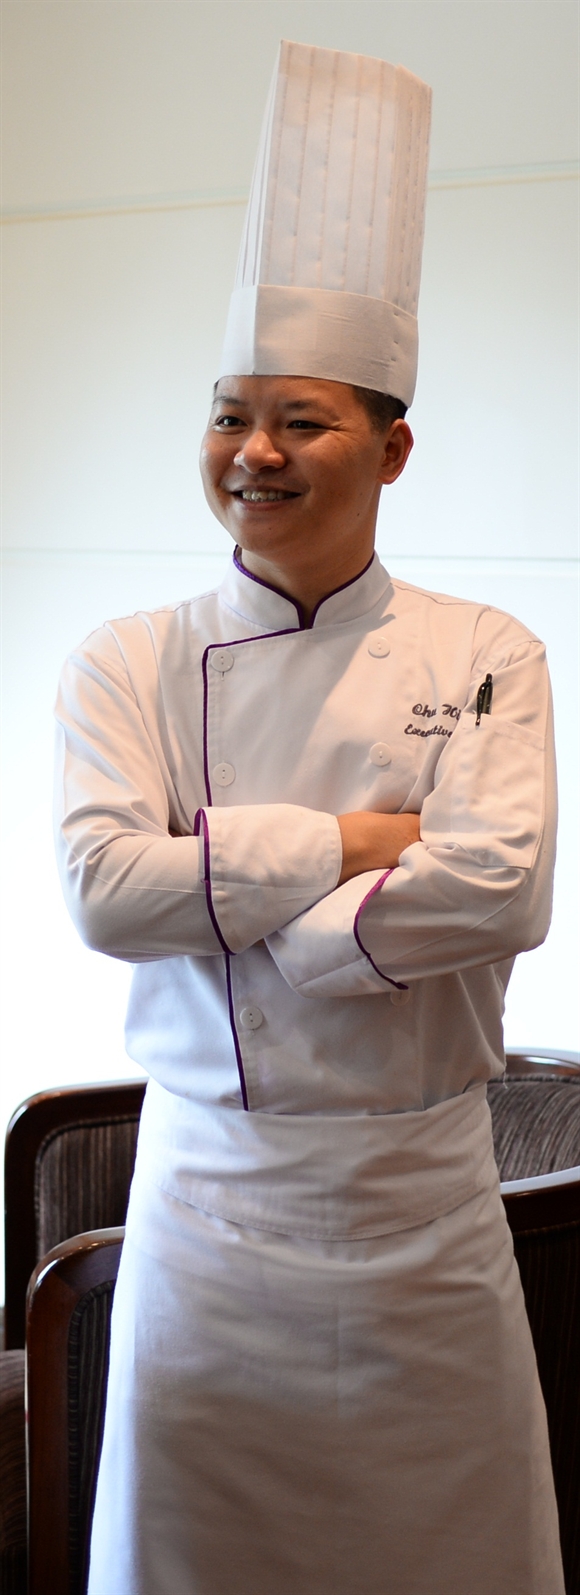 Chu Hoàng Hiệp - Tổng bếp trưởng điều hành khách sạn Mövenpick Hà Nội  (Ảnh: Gafin)